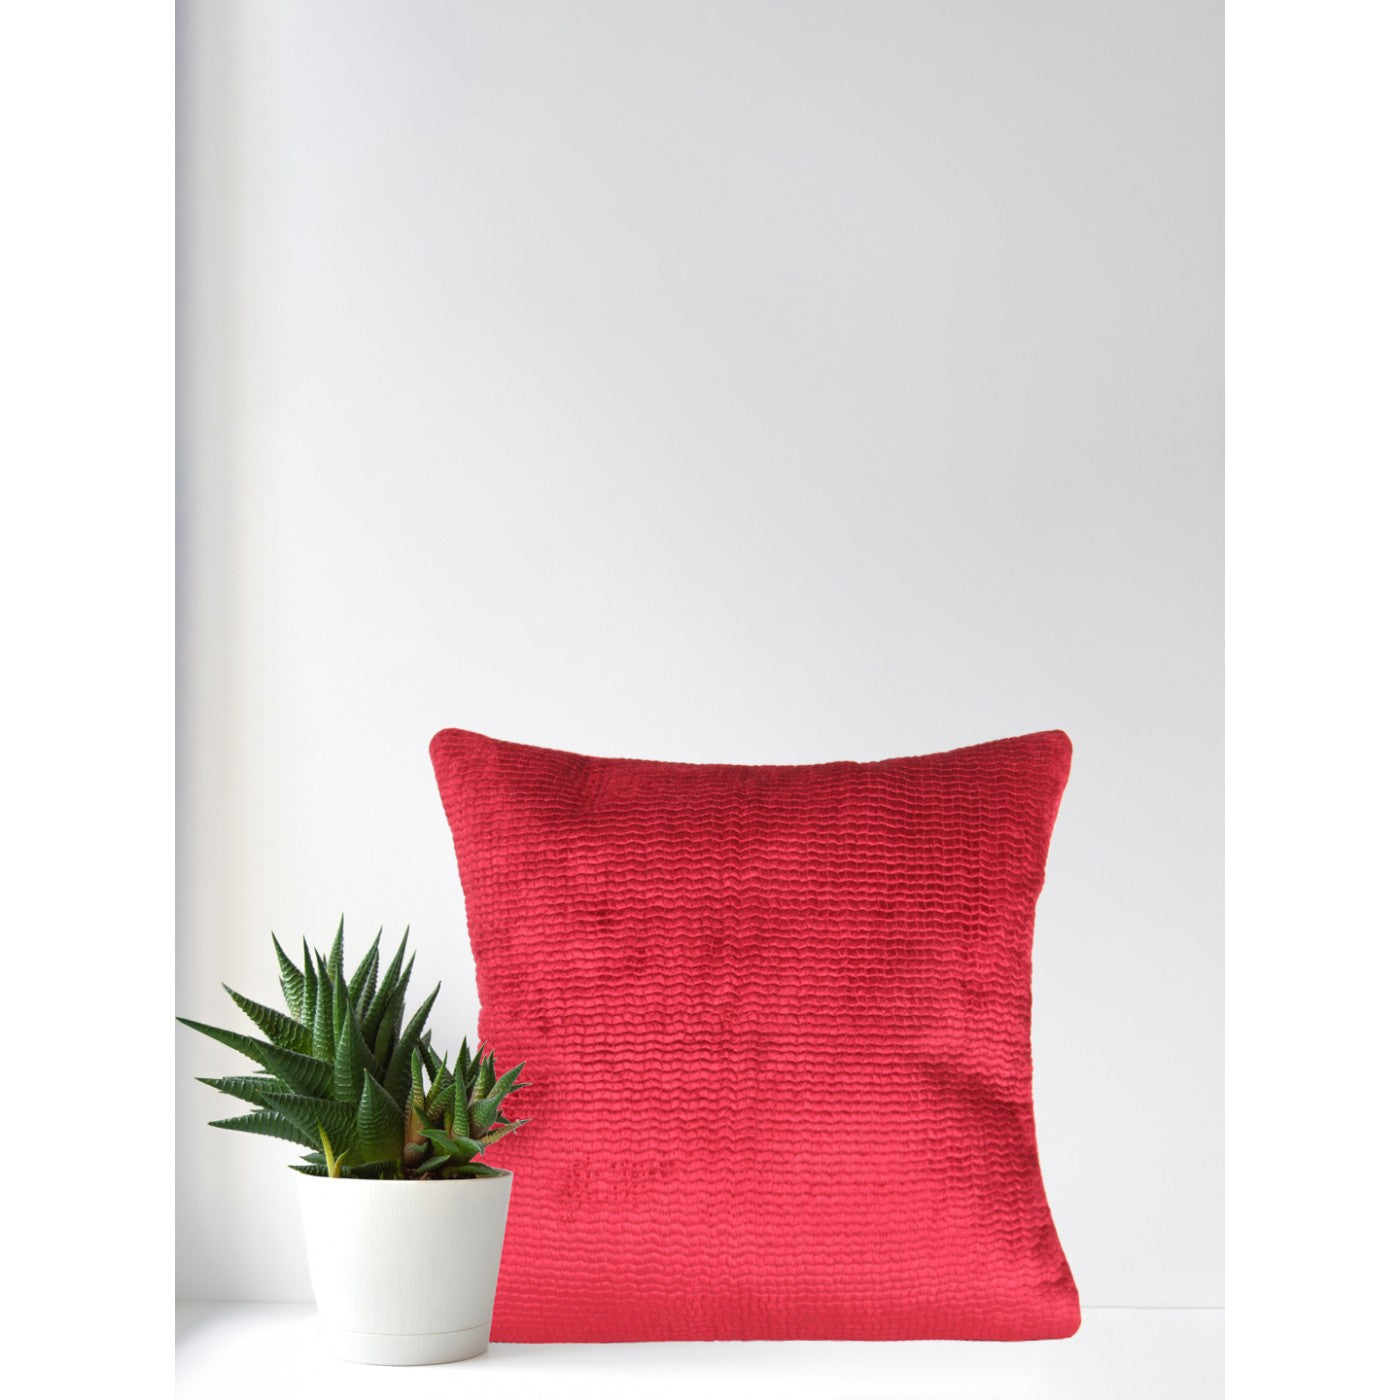 Crimson Elegance 18x18 Inch Plain Velvet Cushion Cover